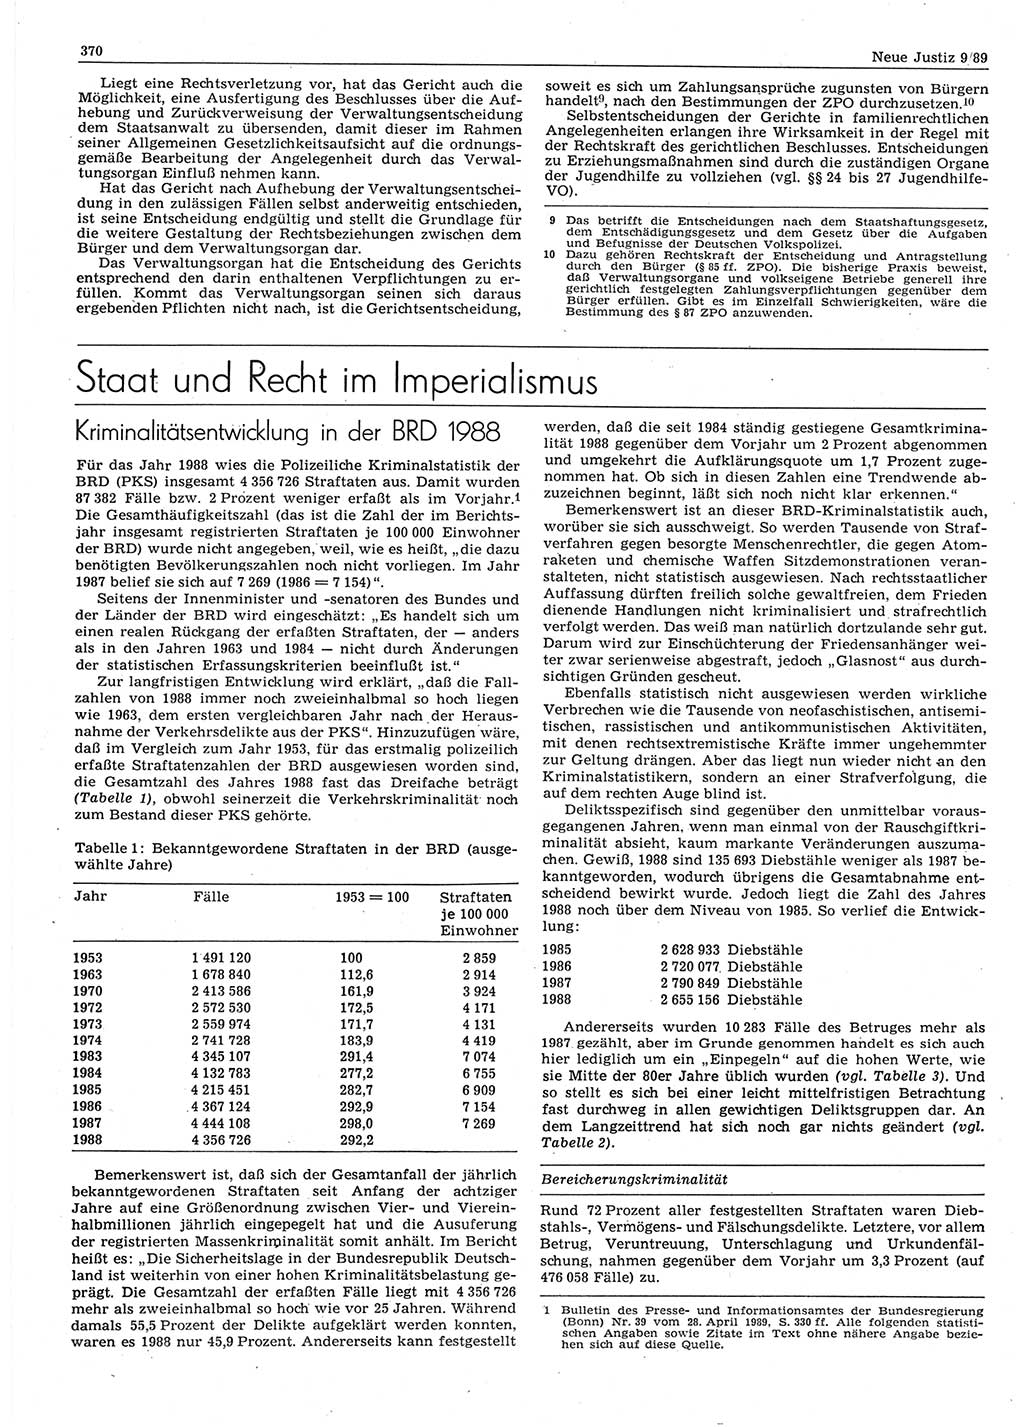 Neue Justiz (NJ), Zeitschrift für sozialistisches Recht und Gesetzlichkeit [Deutsche Demokratische Republik (DDR)], 43. Jahrgang 1989, Seite 370 (NJ DDR 1989, S. 370)